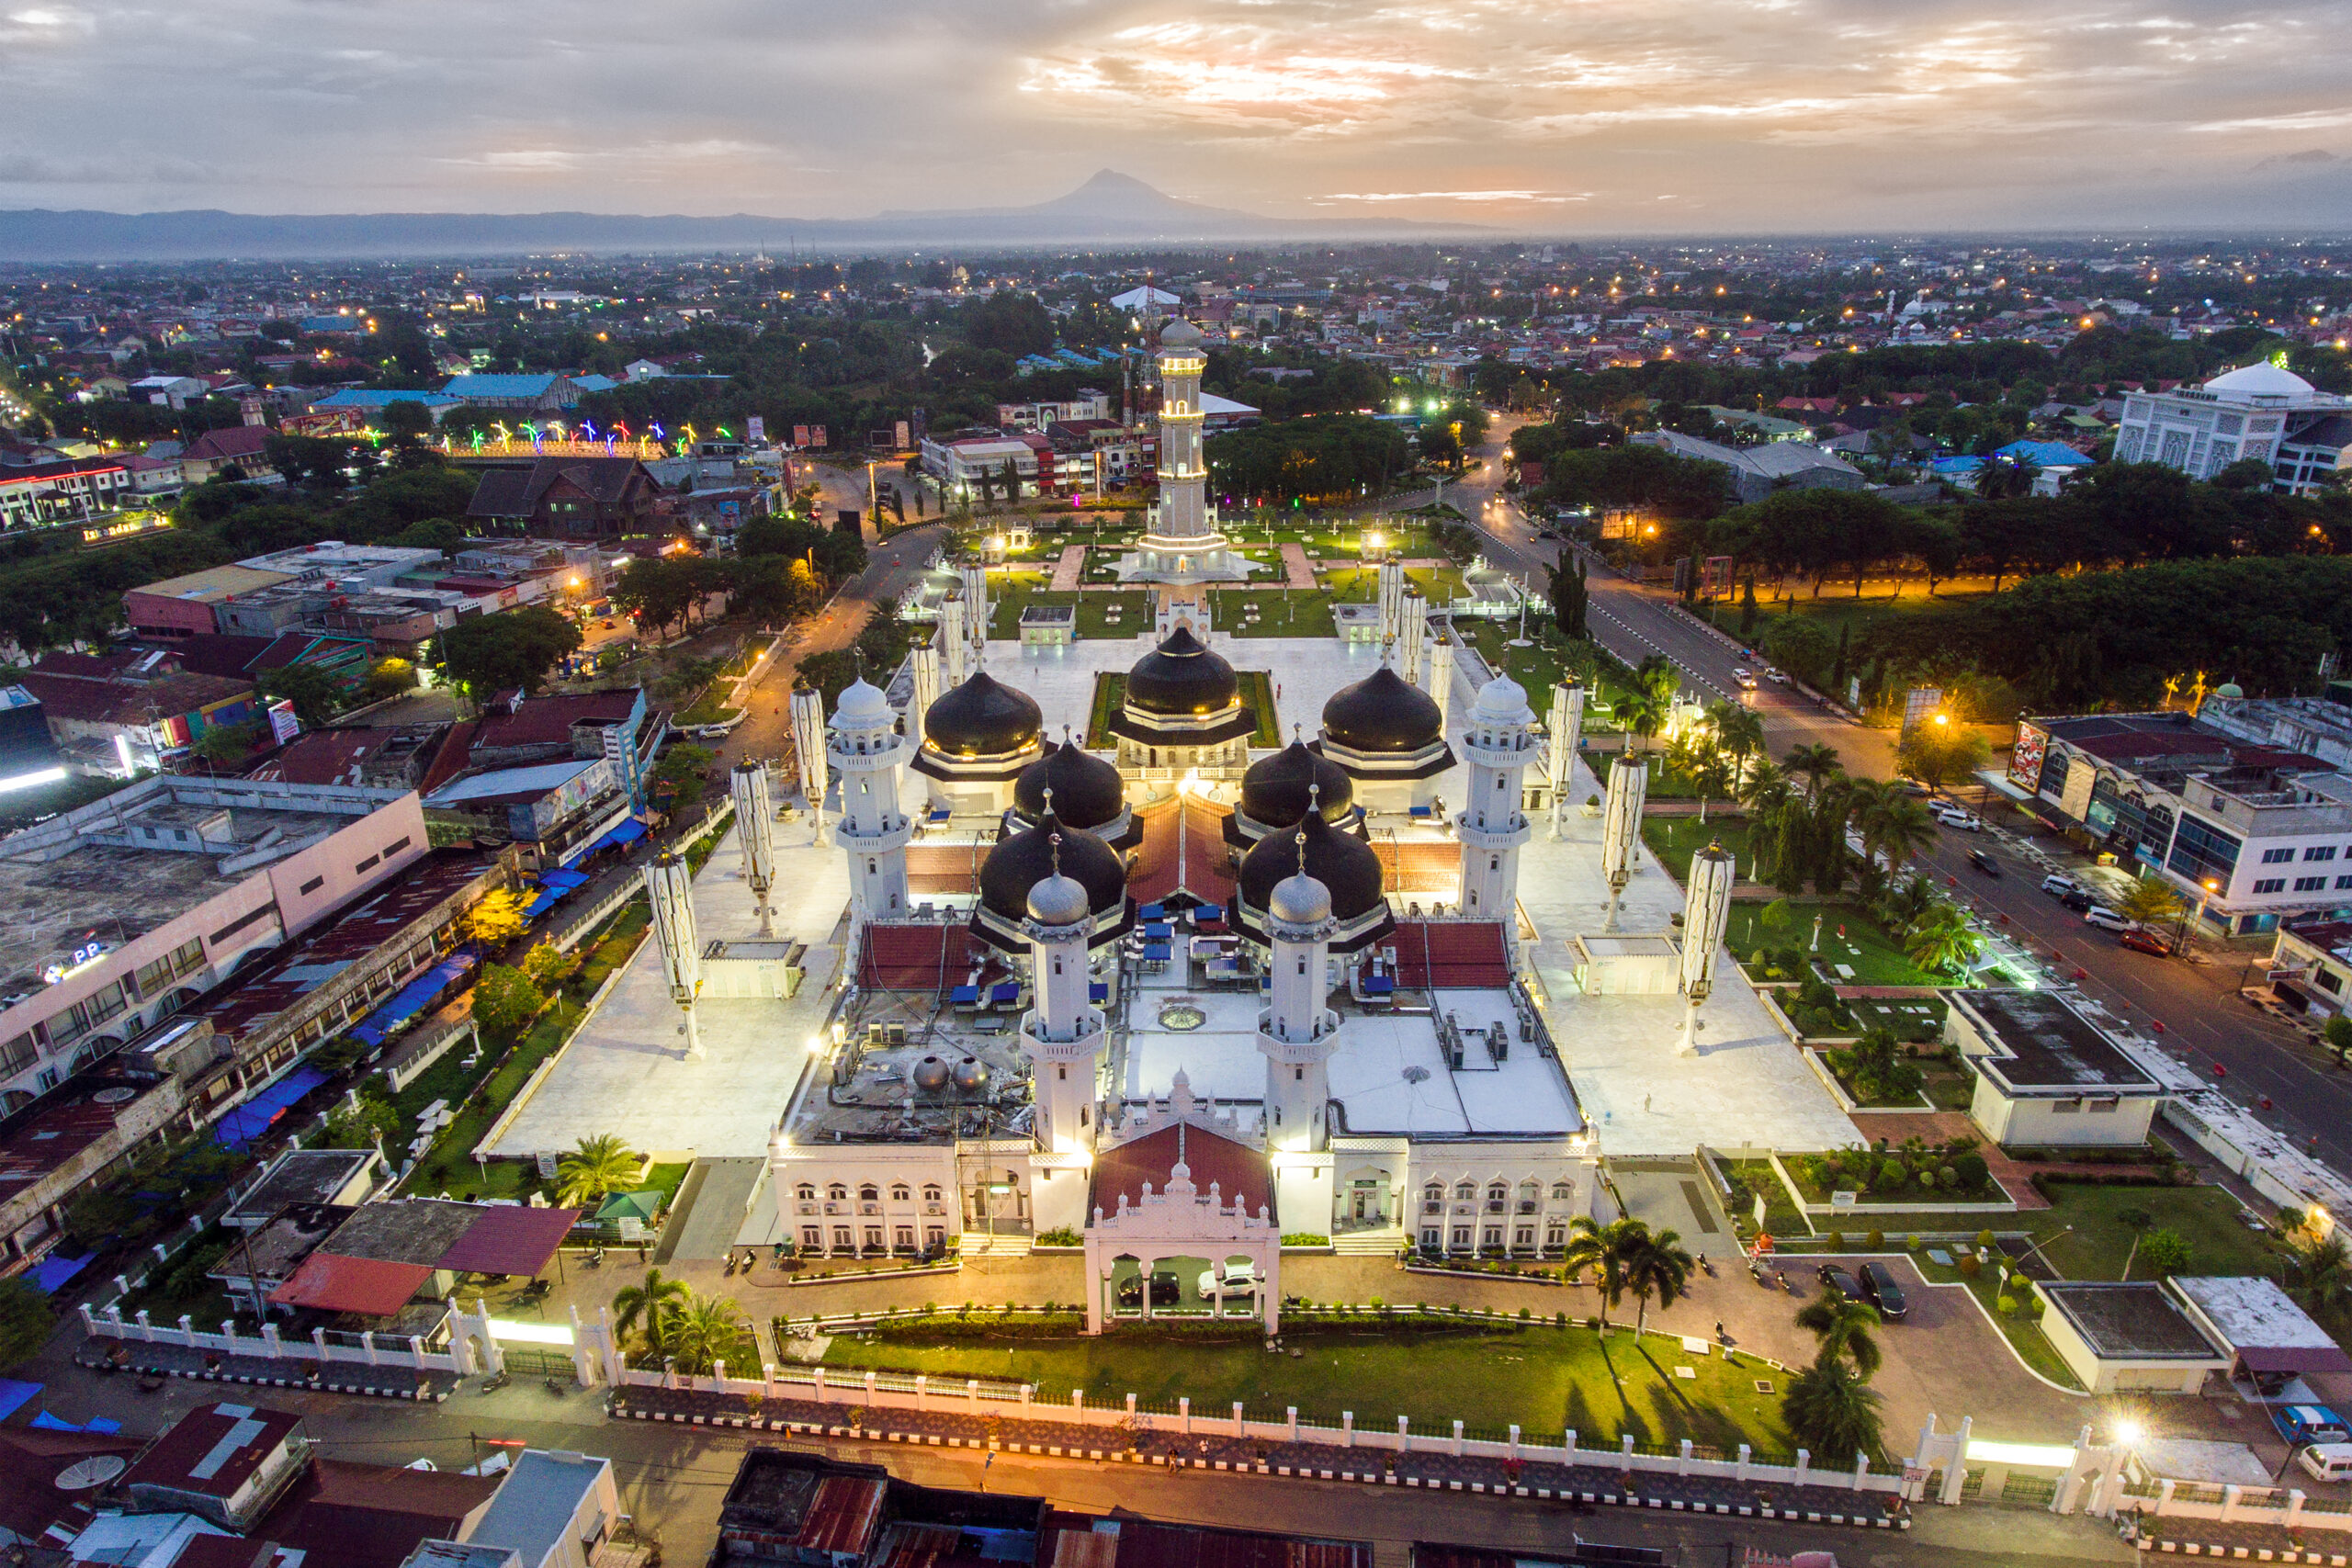 Baiturrahman Grand Mosque in Indonesia.